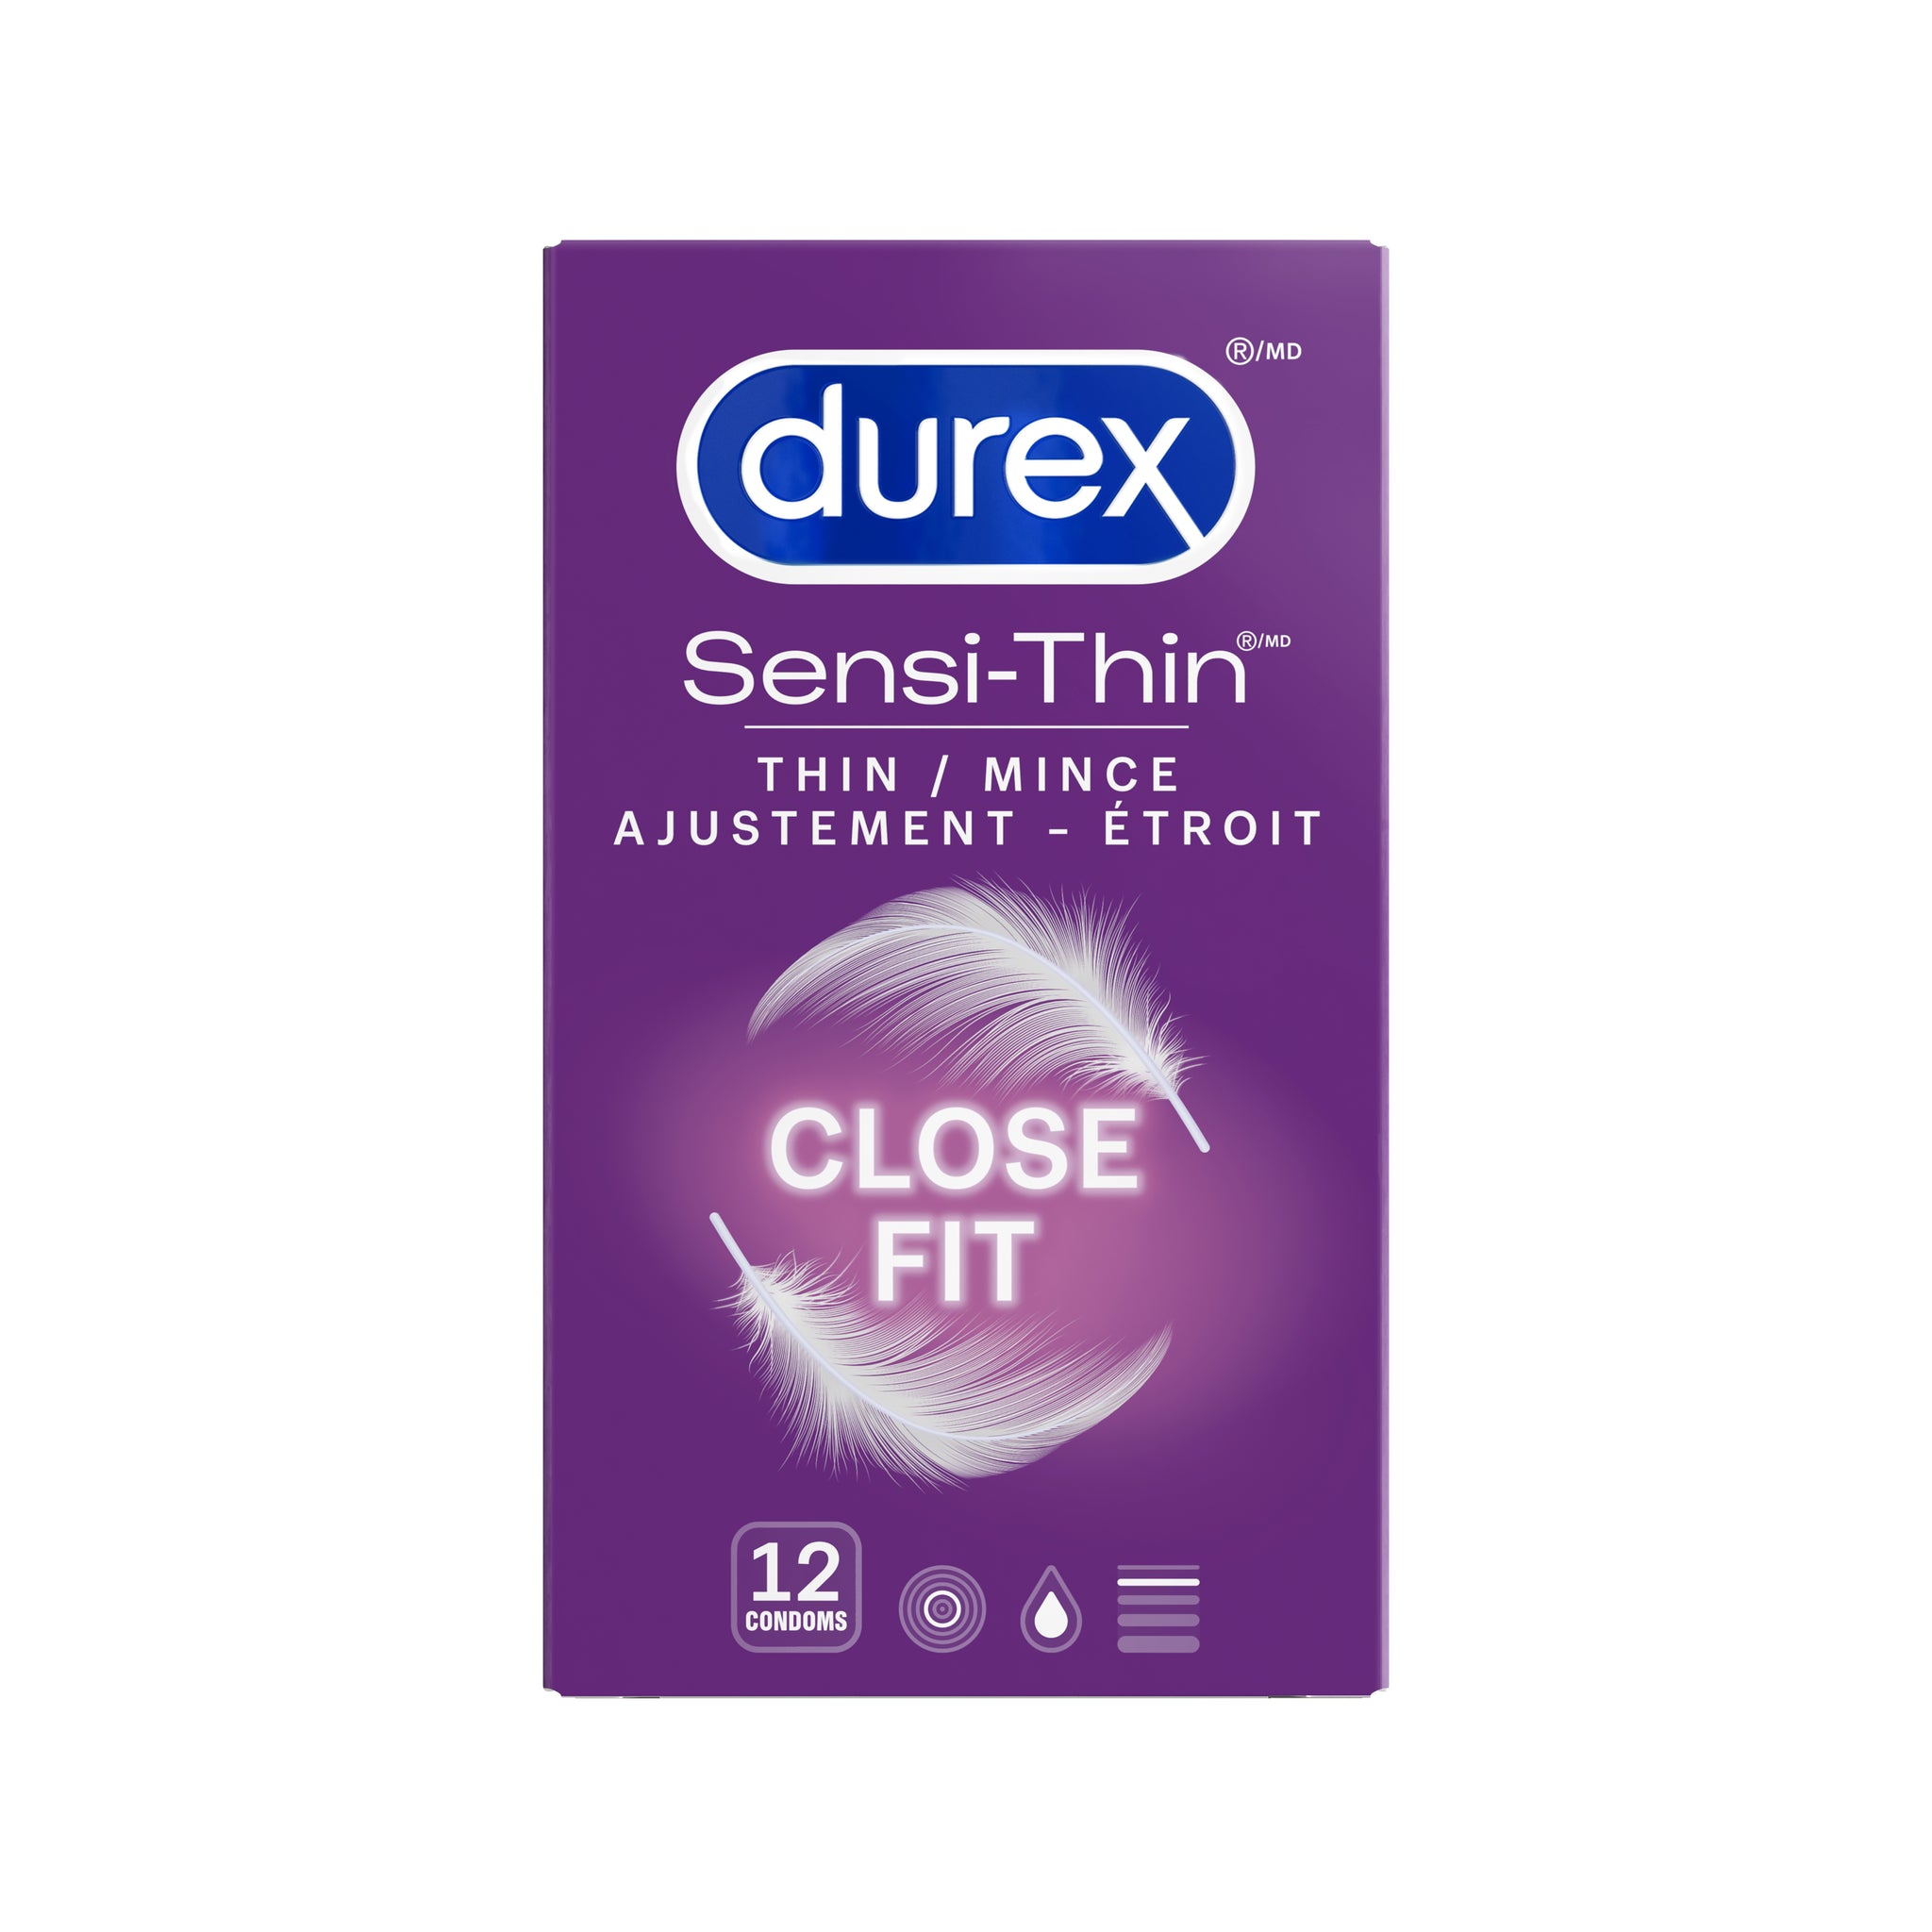 packshot of Durex Sensi-Thin Close Fit